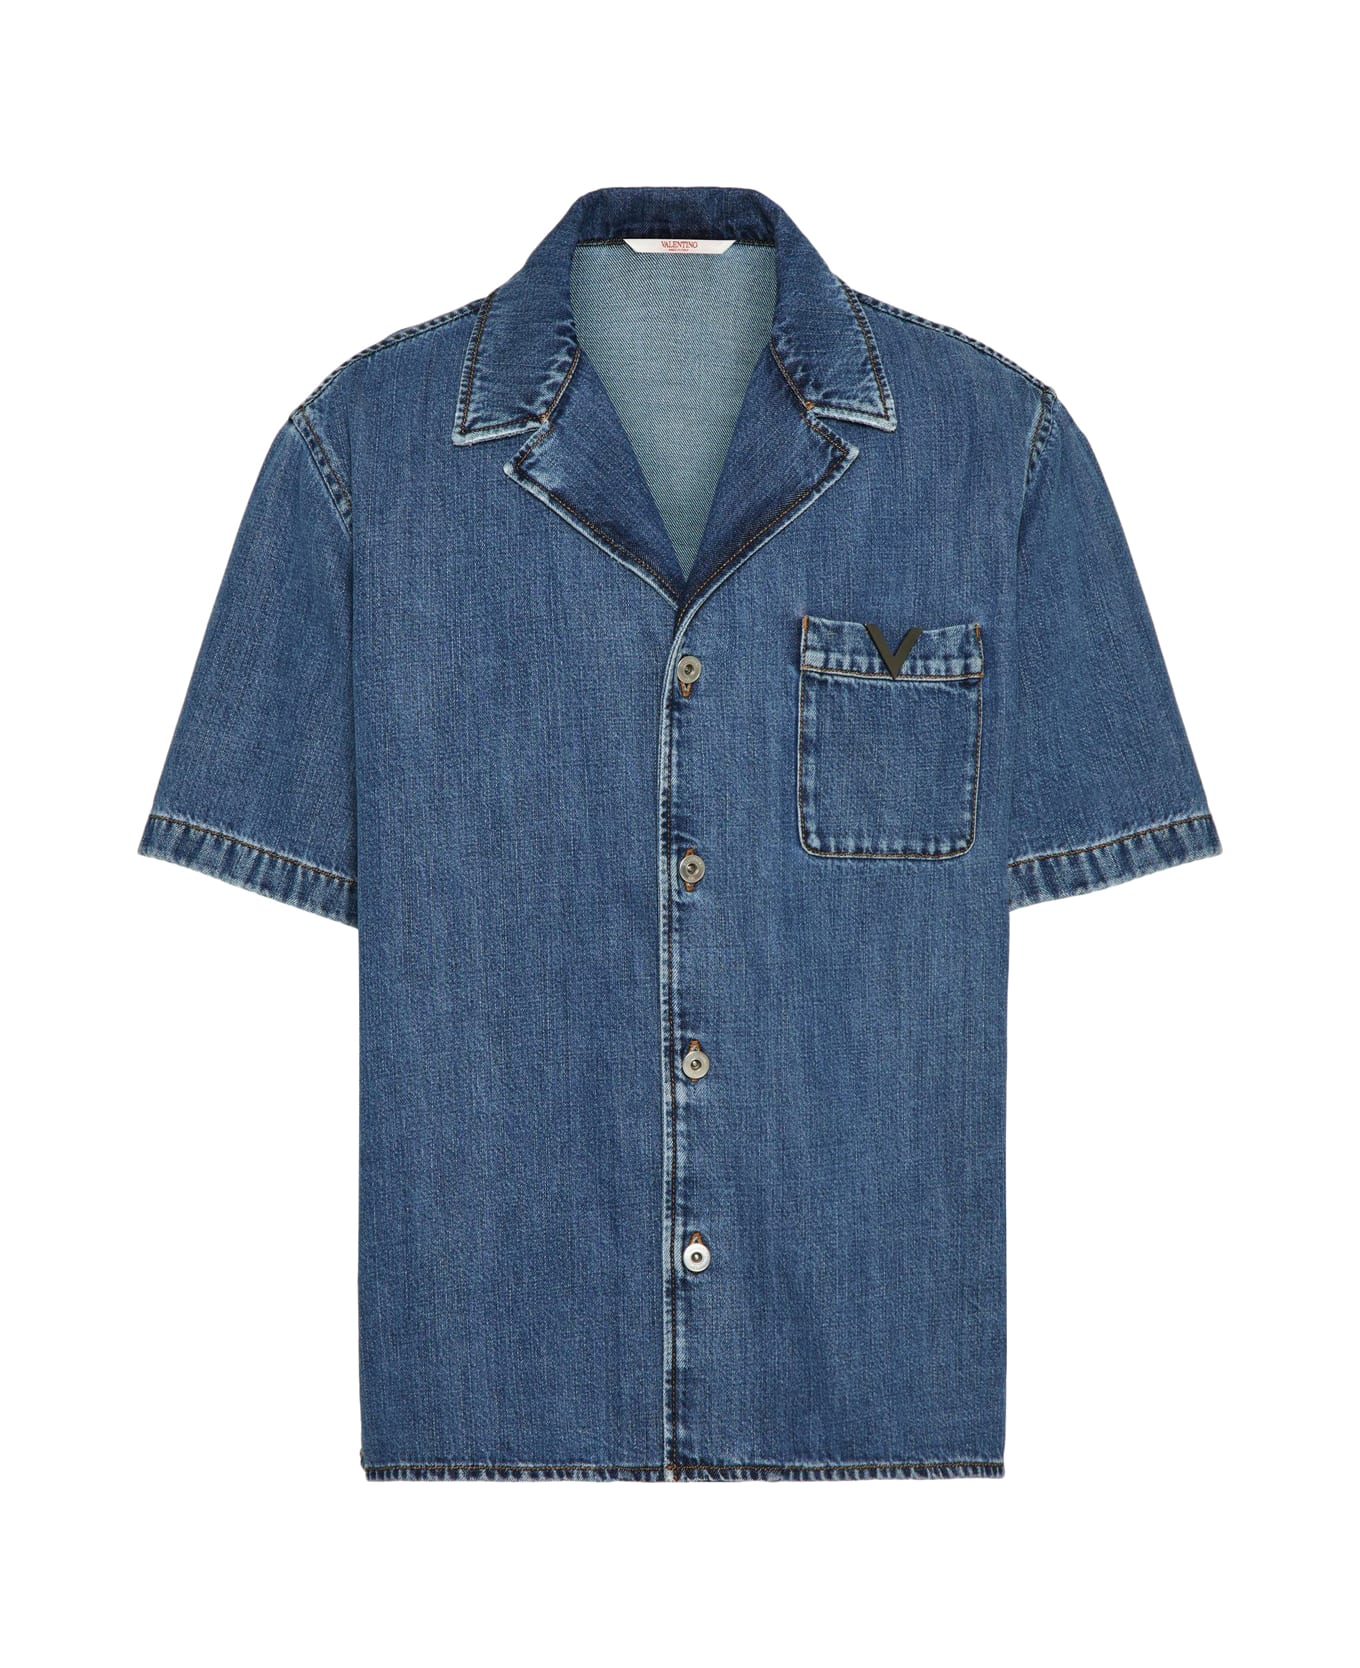 Valentino Garavani Shirt In Denim V Detail Medium Blue Wash Denim - Medium Blue Denim